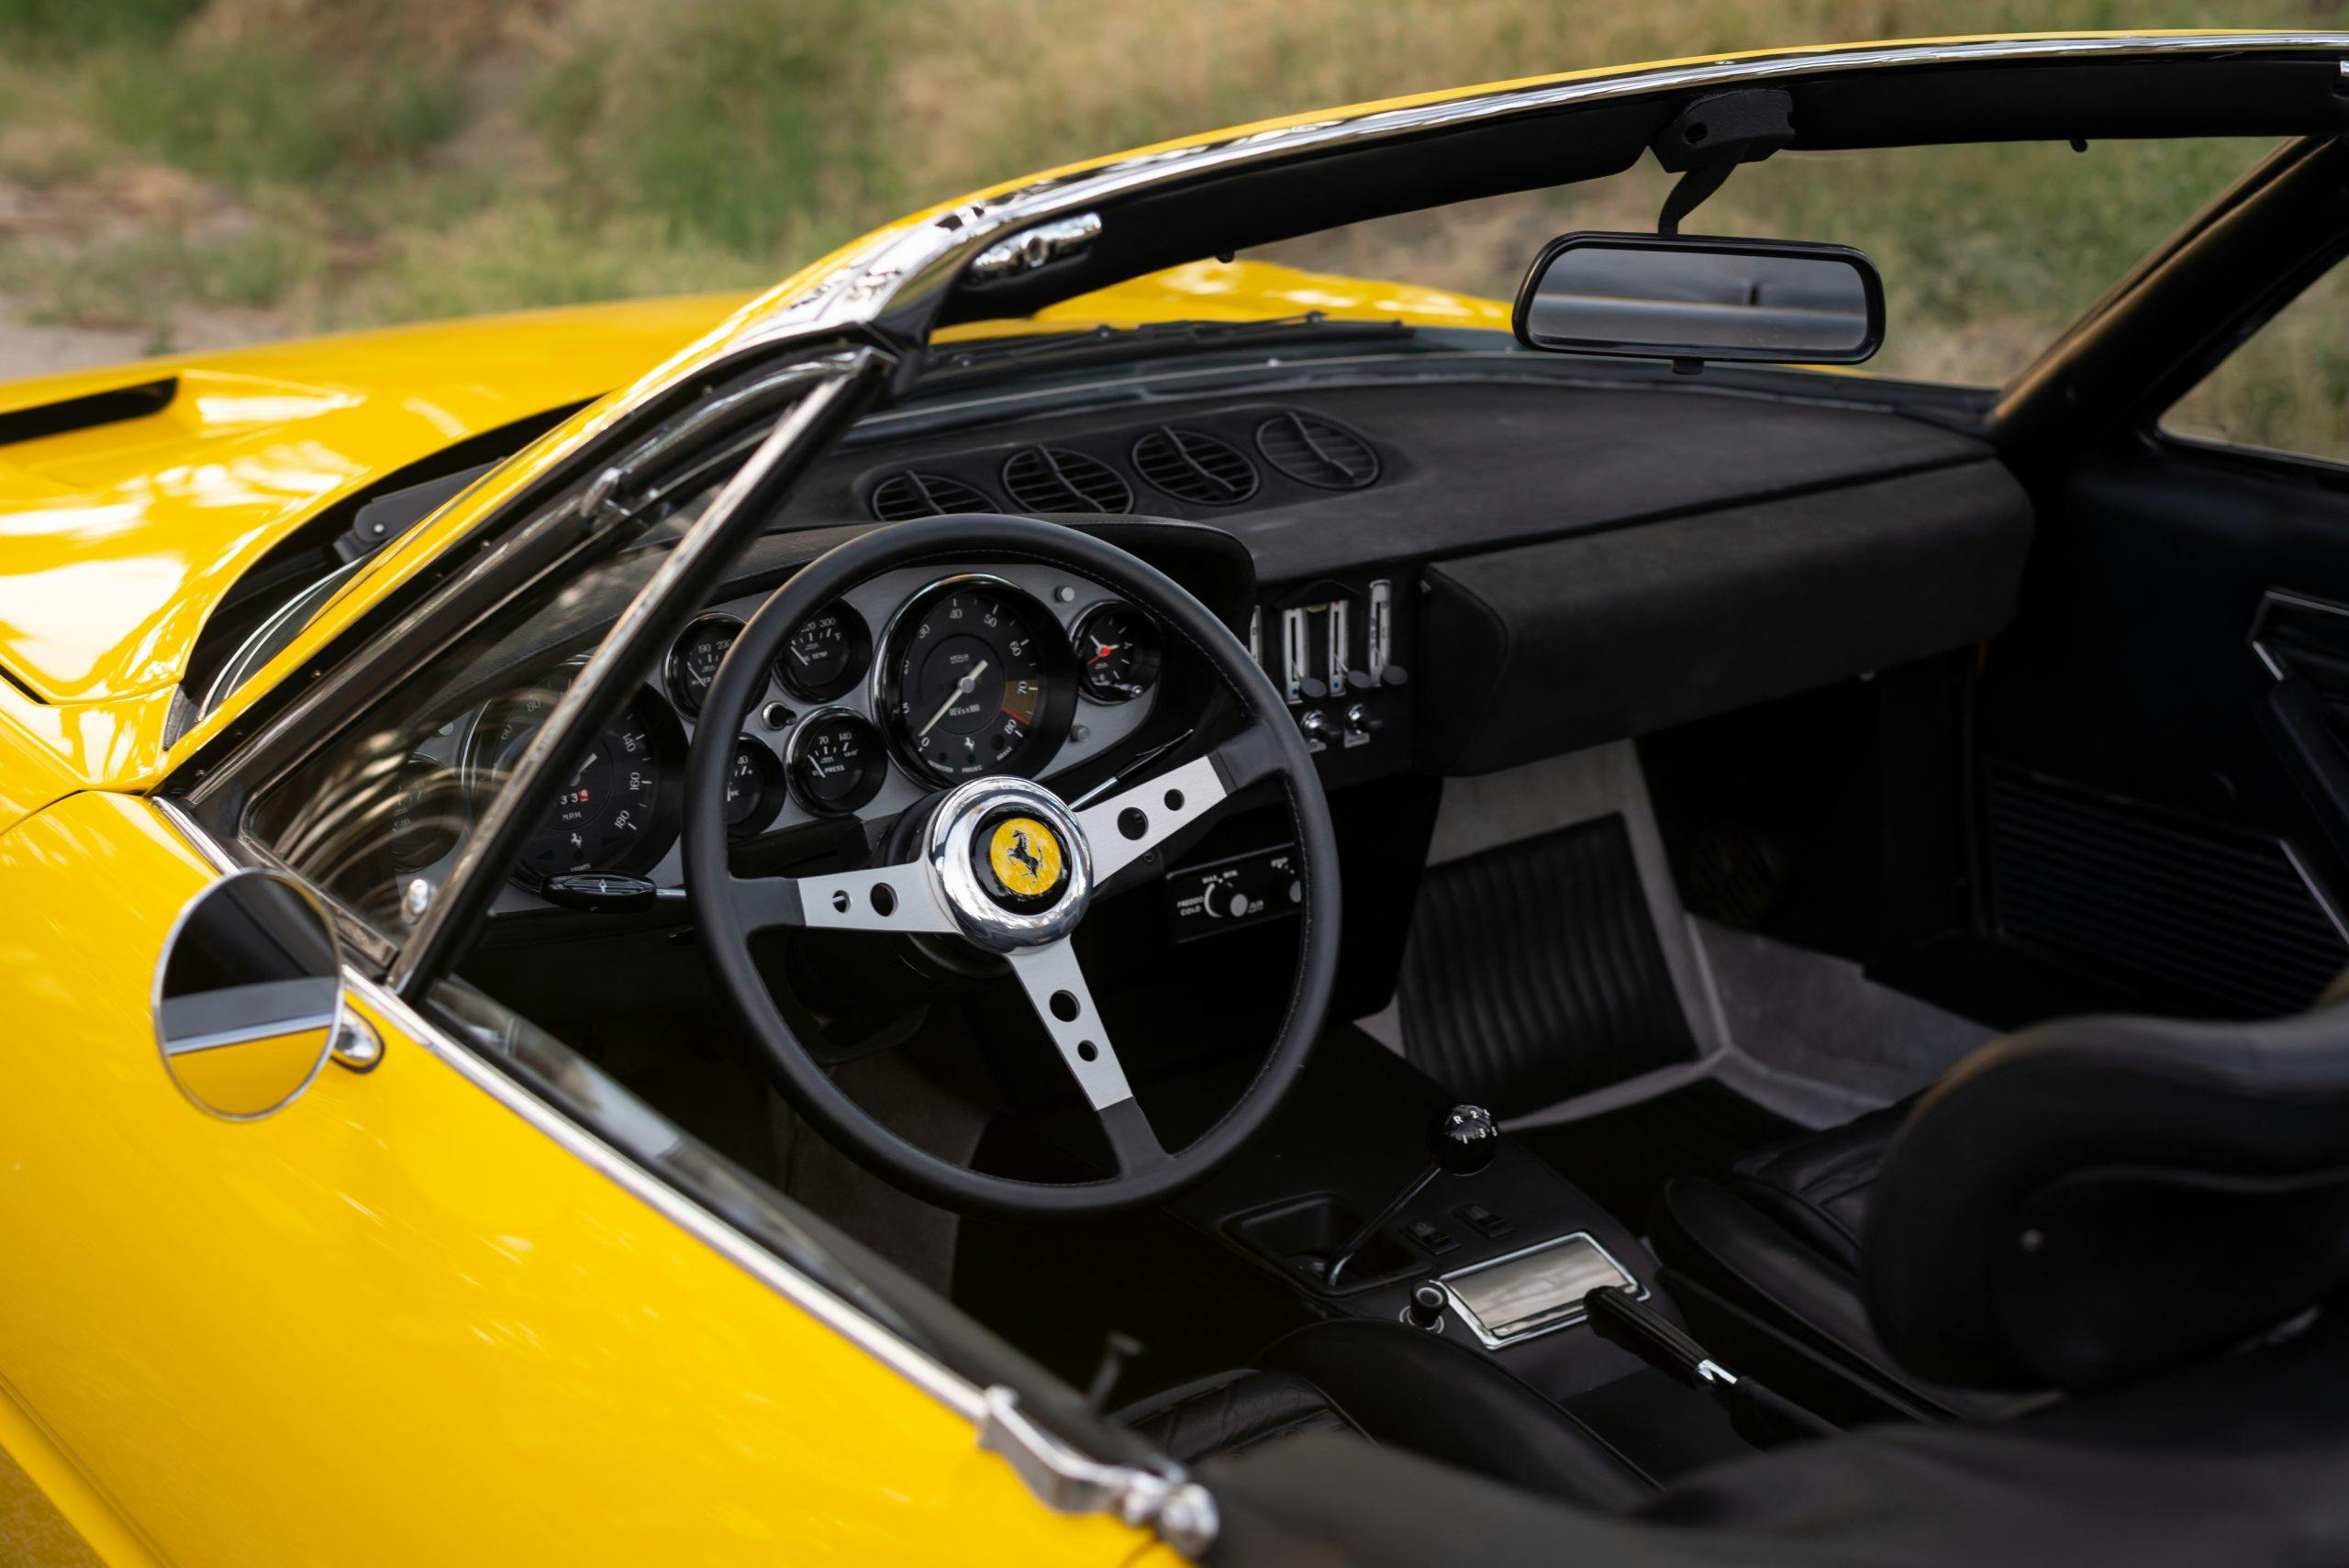 Ferrari 365 interior